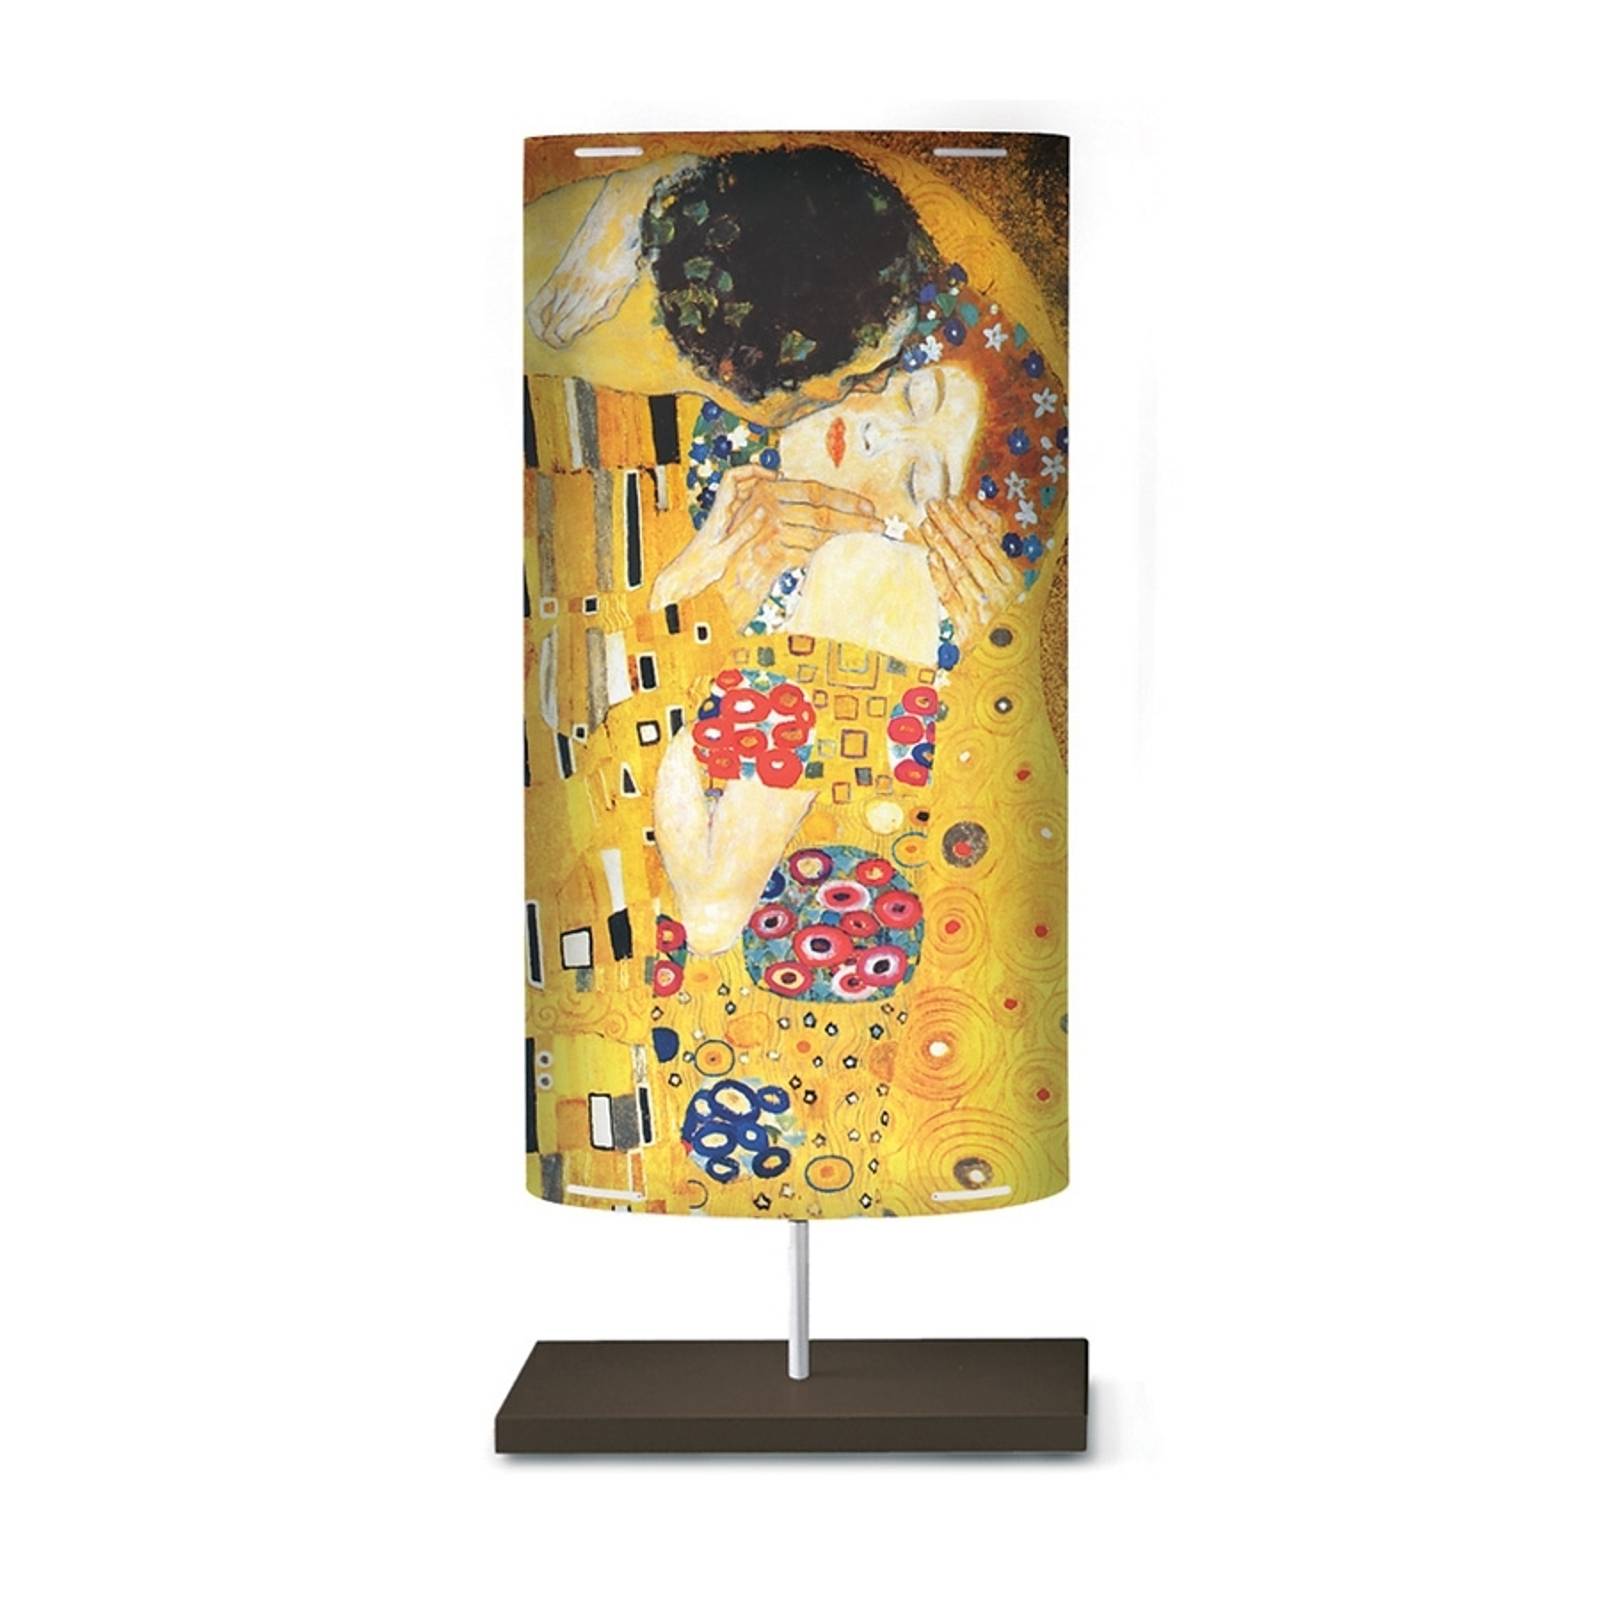 Taidekuviointi Klimt III -lattiavalaisimessa